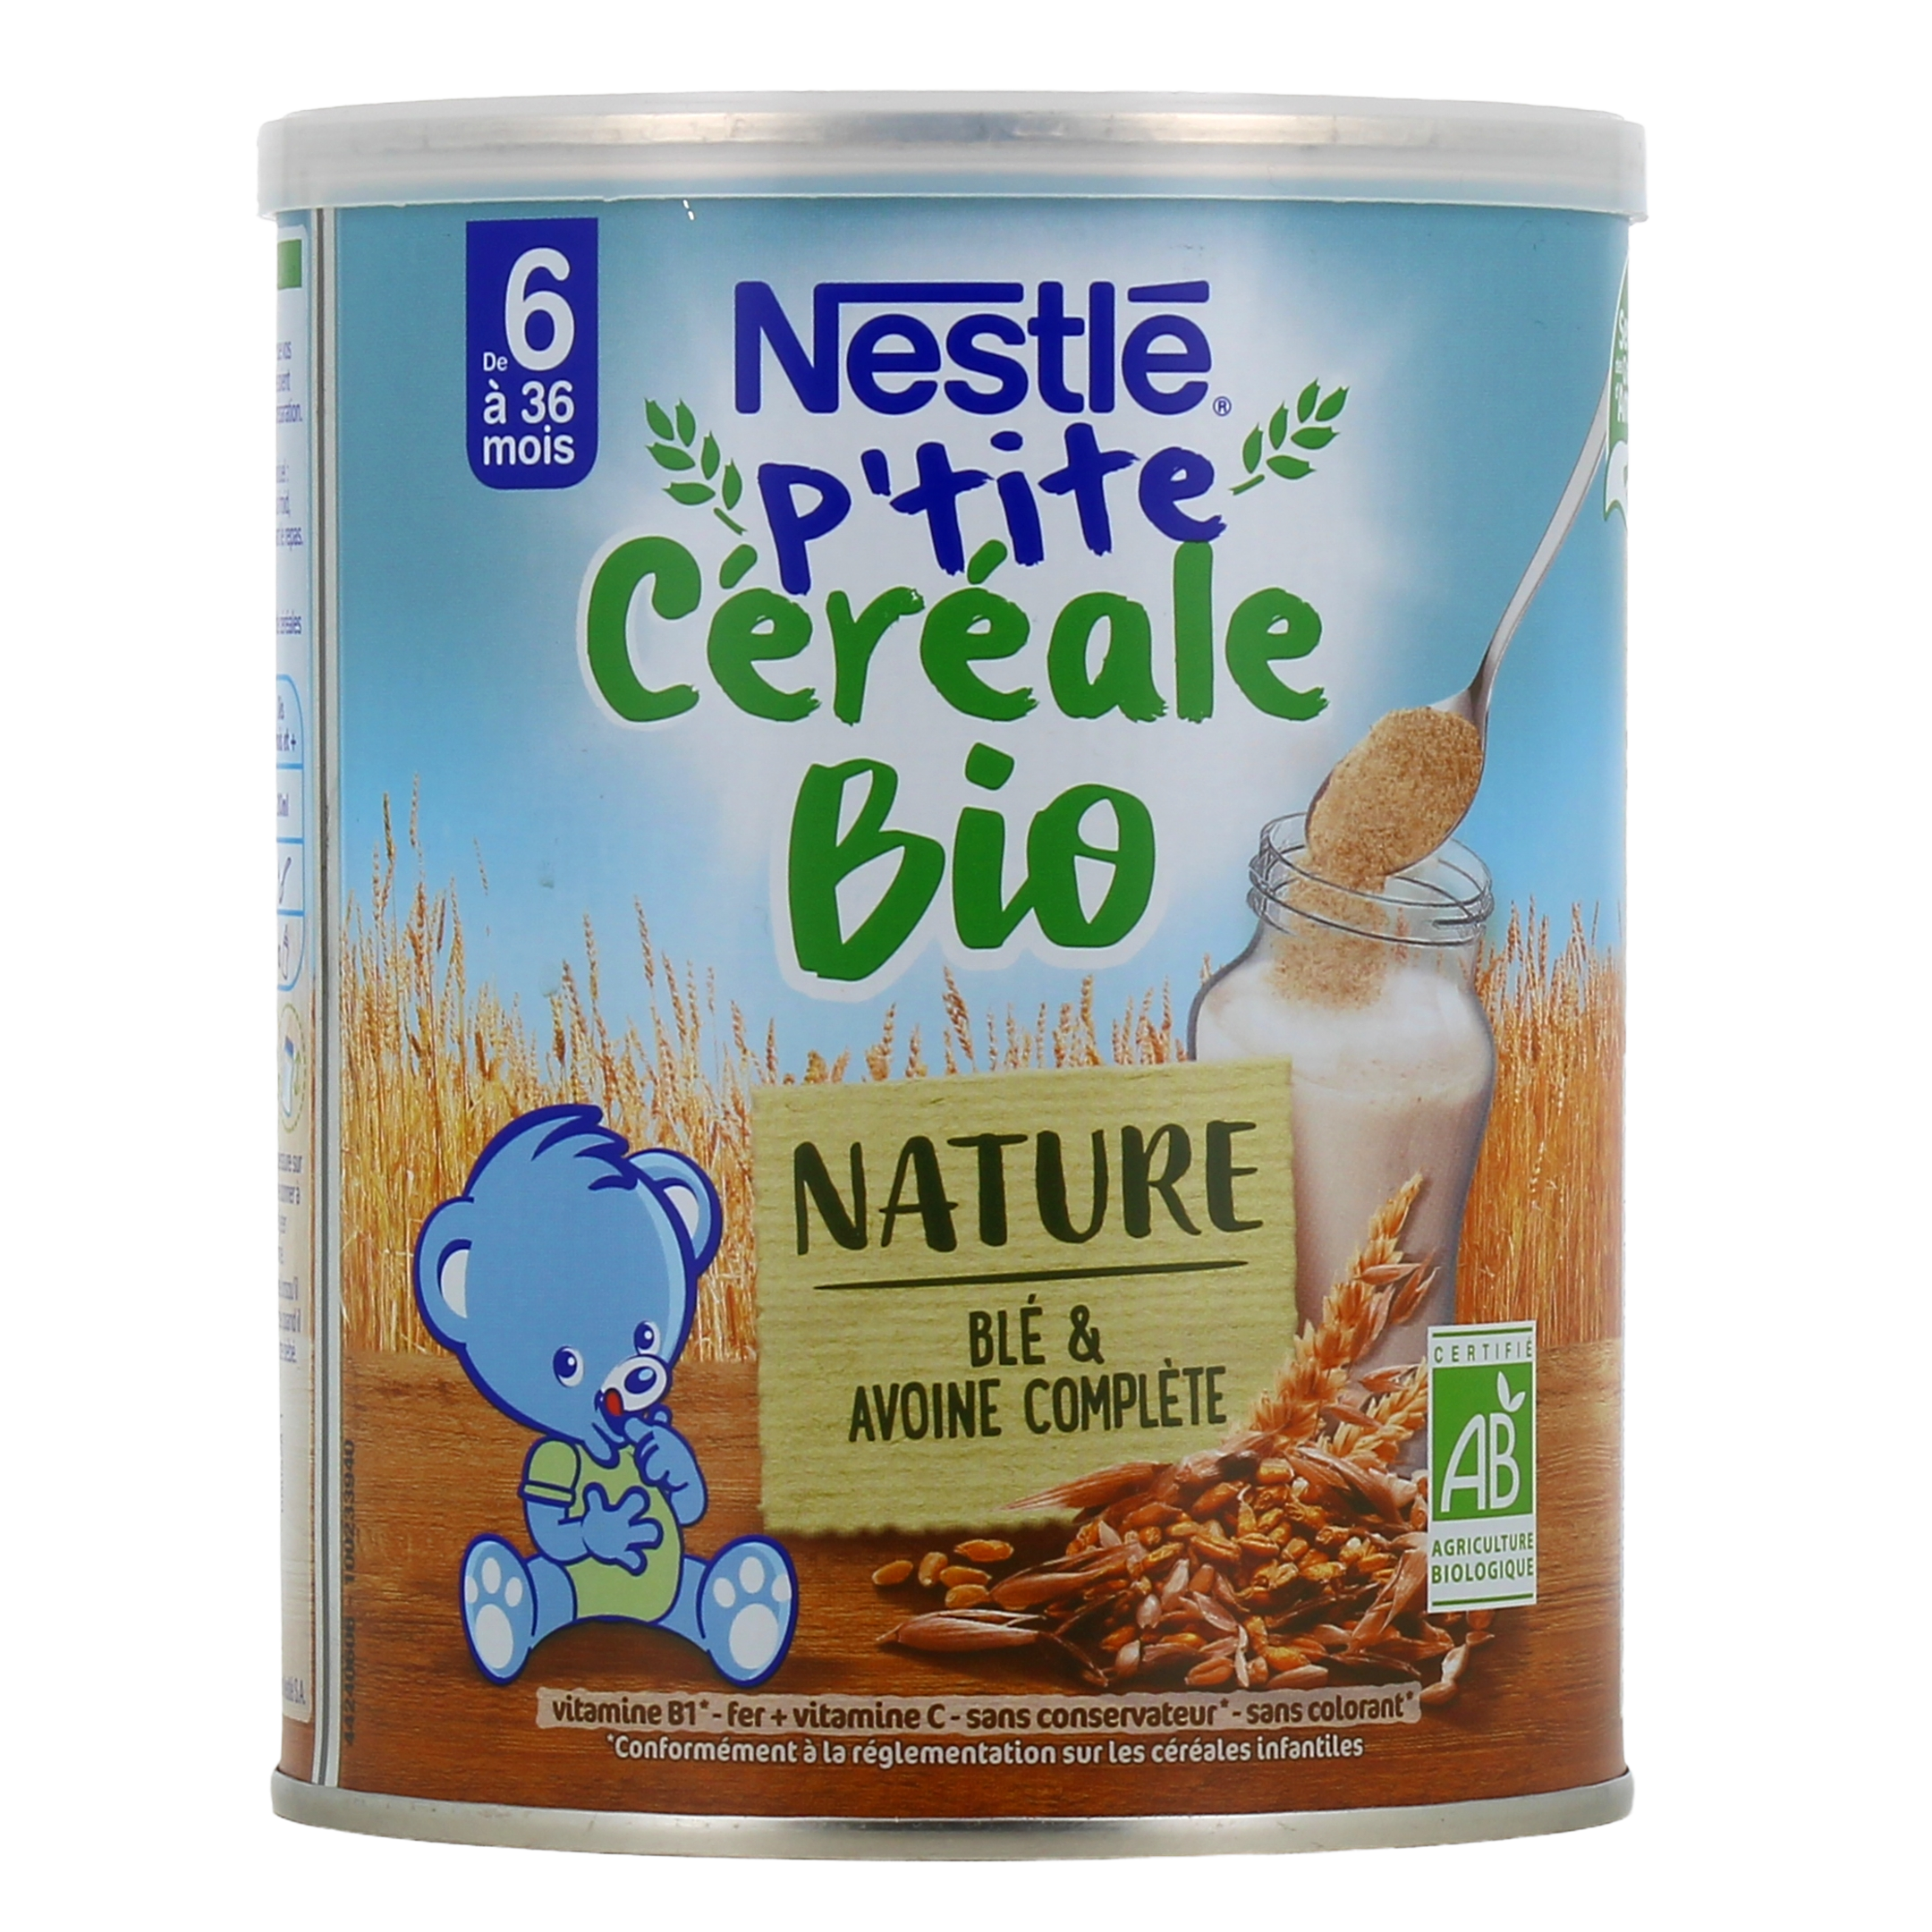 Cereale bebe : Achat de céréales pour bébé en ligne